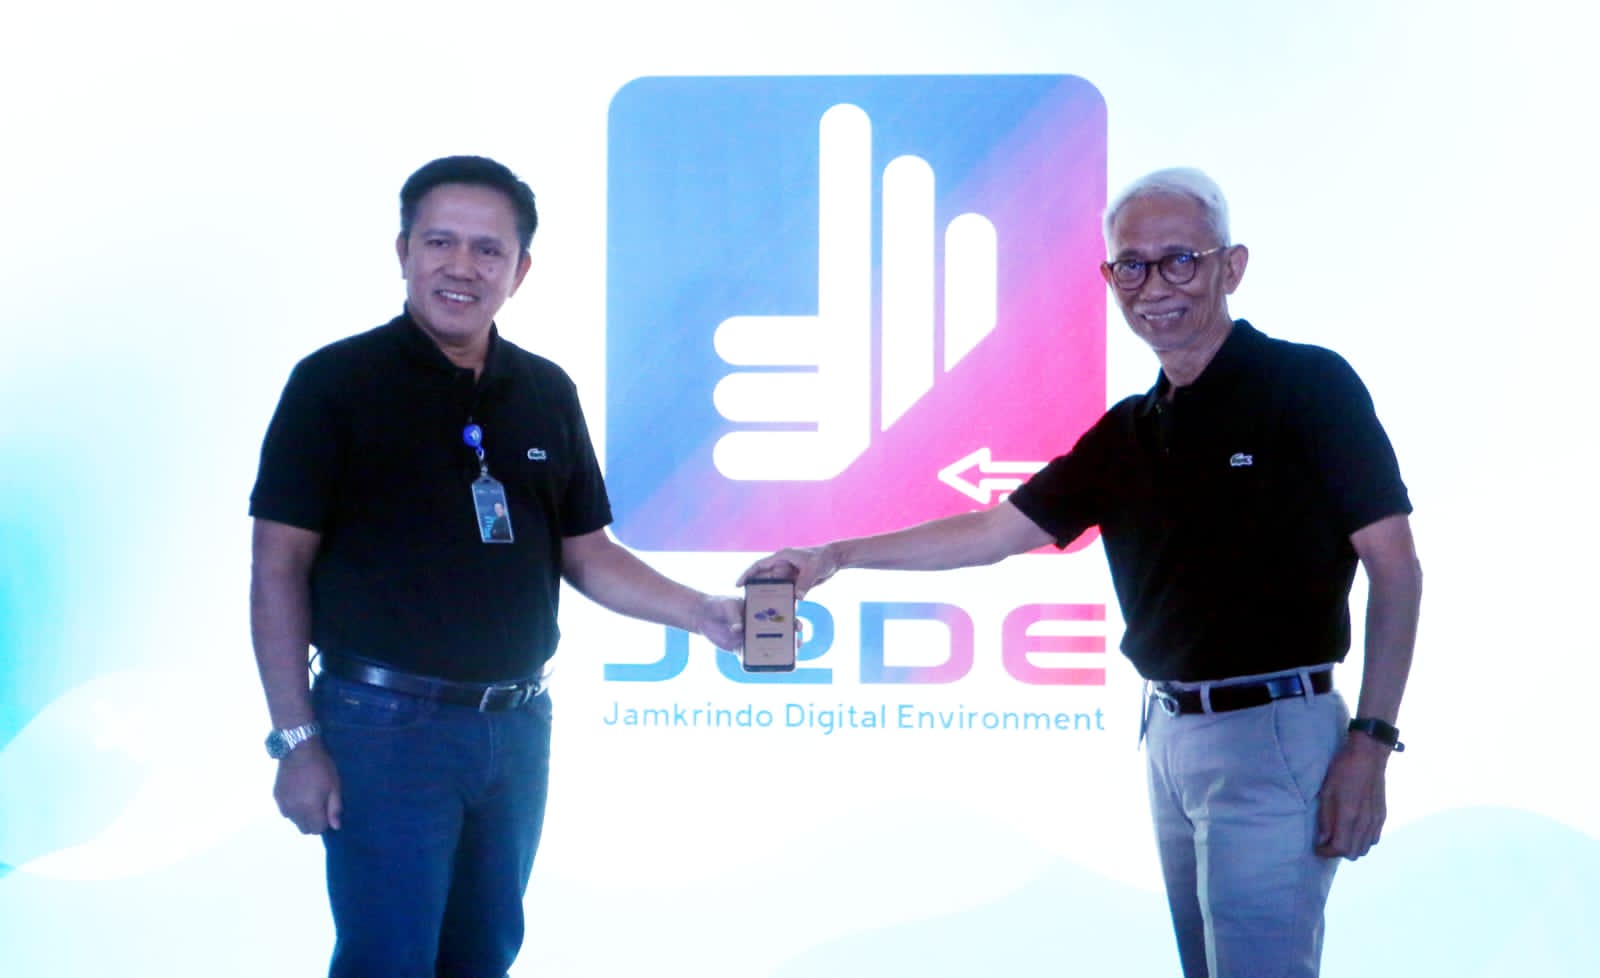 Digitalisasi Proses Penjaminan, Jamkrindo Meluncurkan Aplikasi J@De